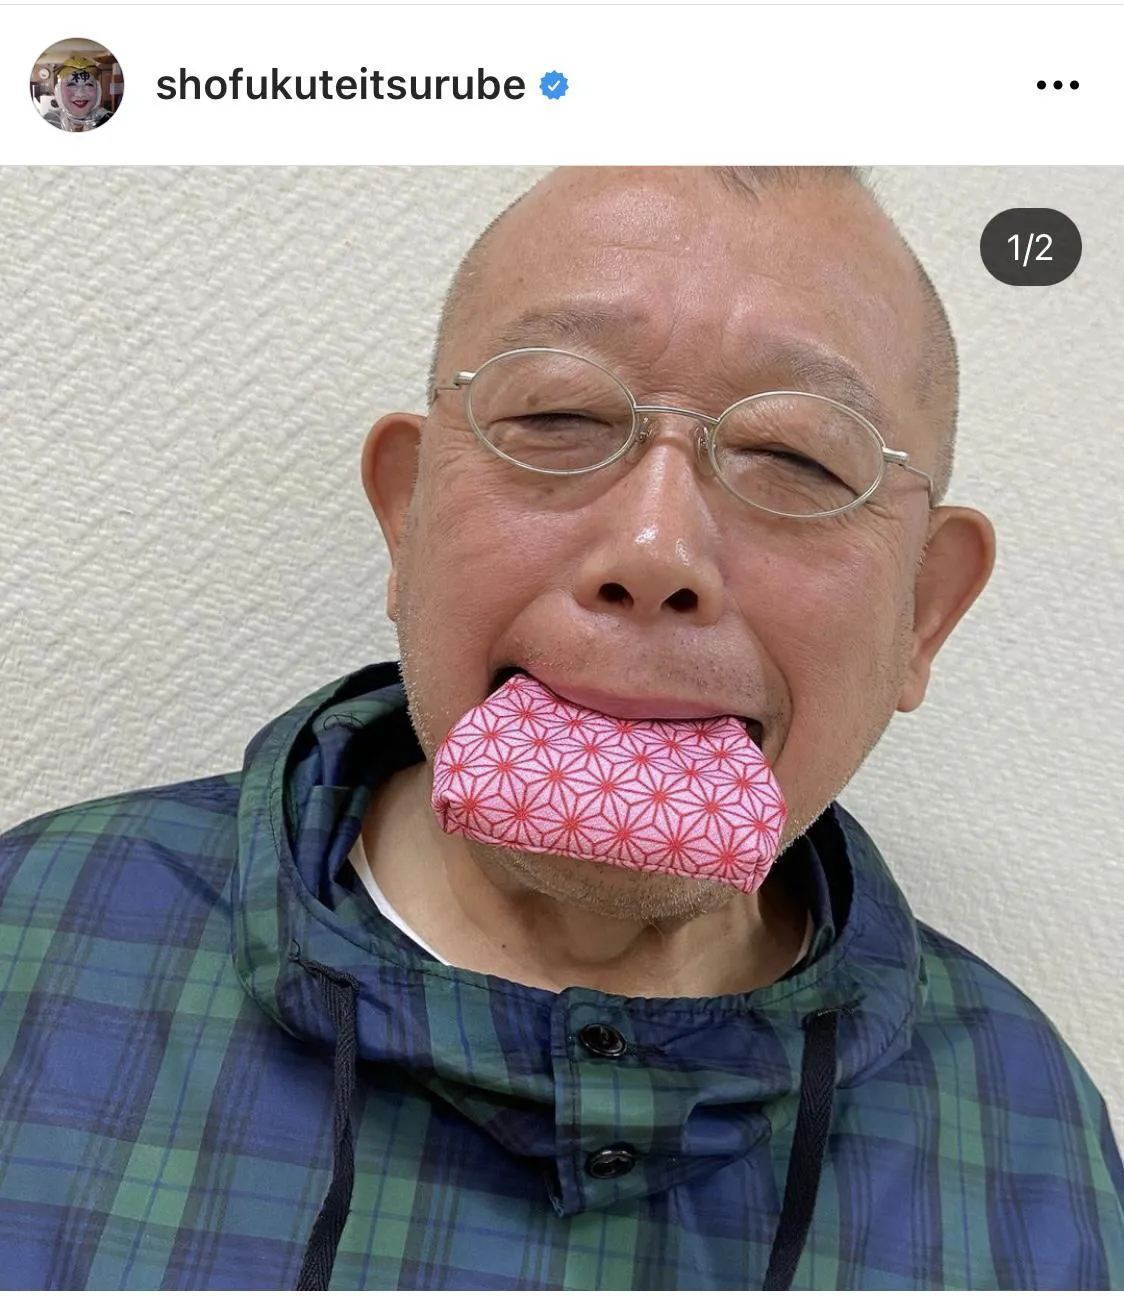 ※笑福亭鶴瓶公式Instagram(shofukuteitsurube)のスクリーンショット